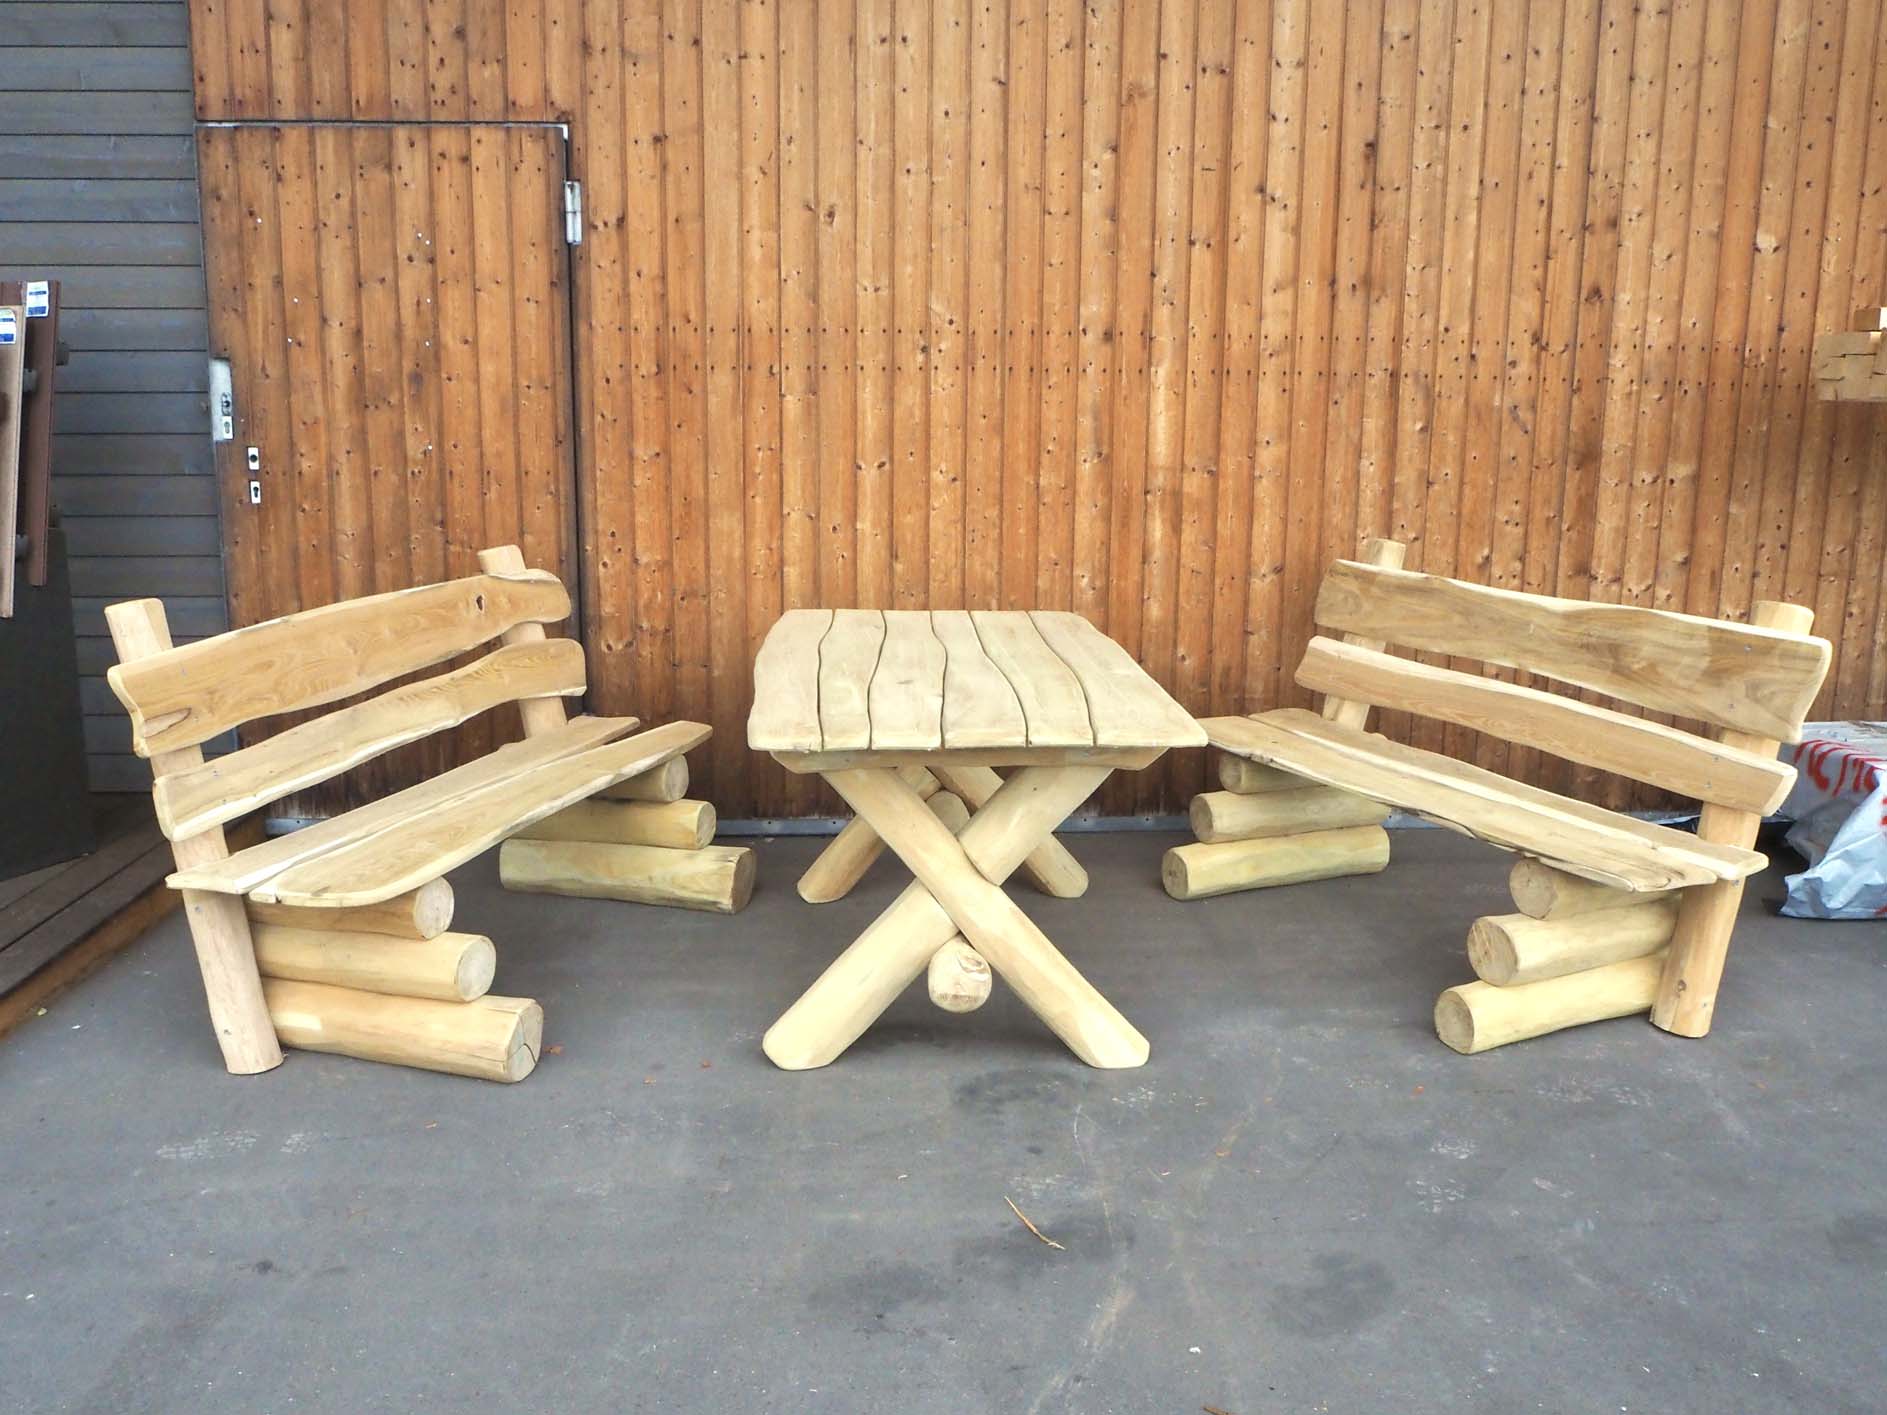 heller Robinien Holz Tisch mit Robinien Holz Bänken in Apolda kaufen bei Holz Beck